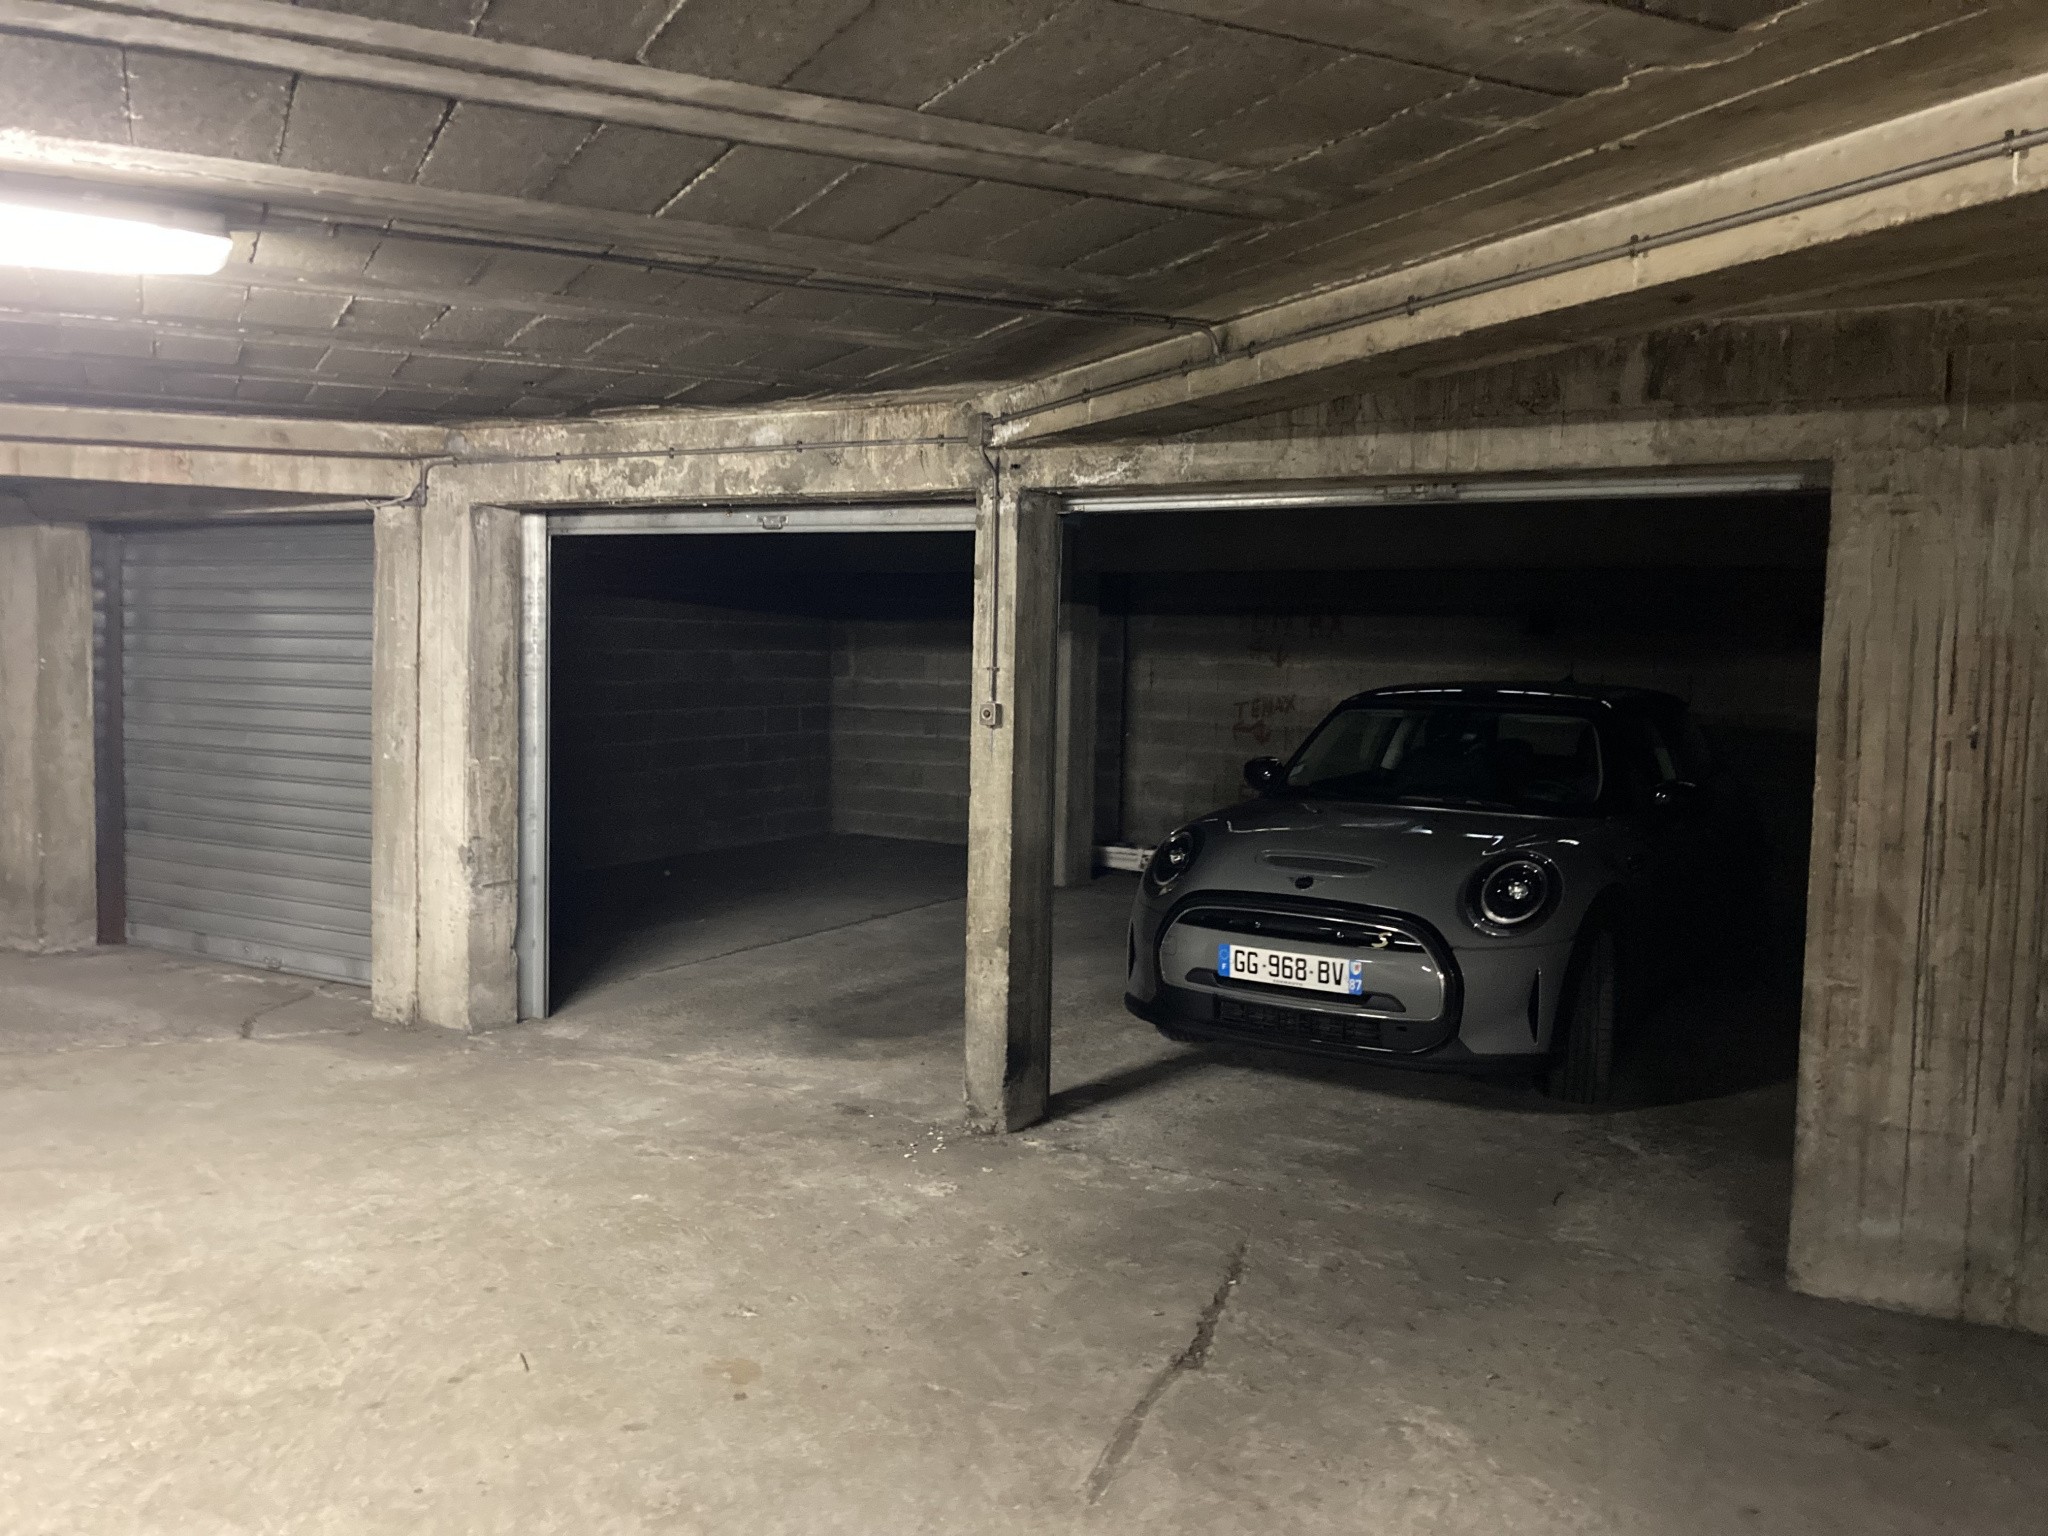 Vente Garage / Parking à Limoges 0 pièce